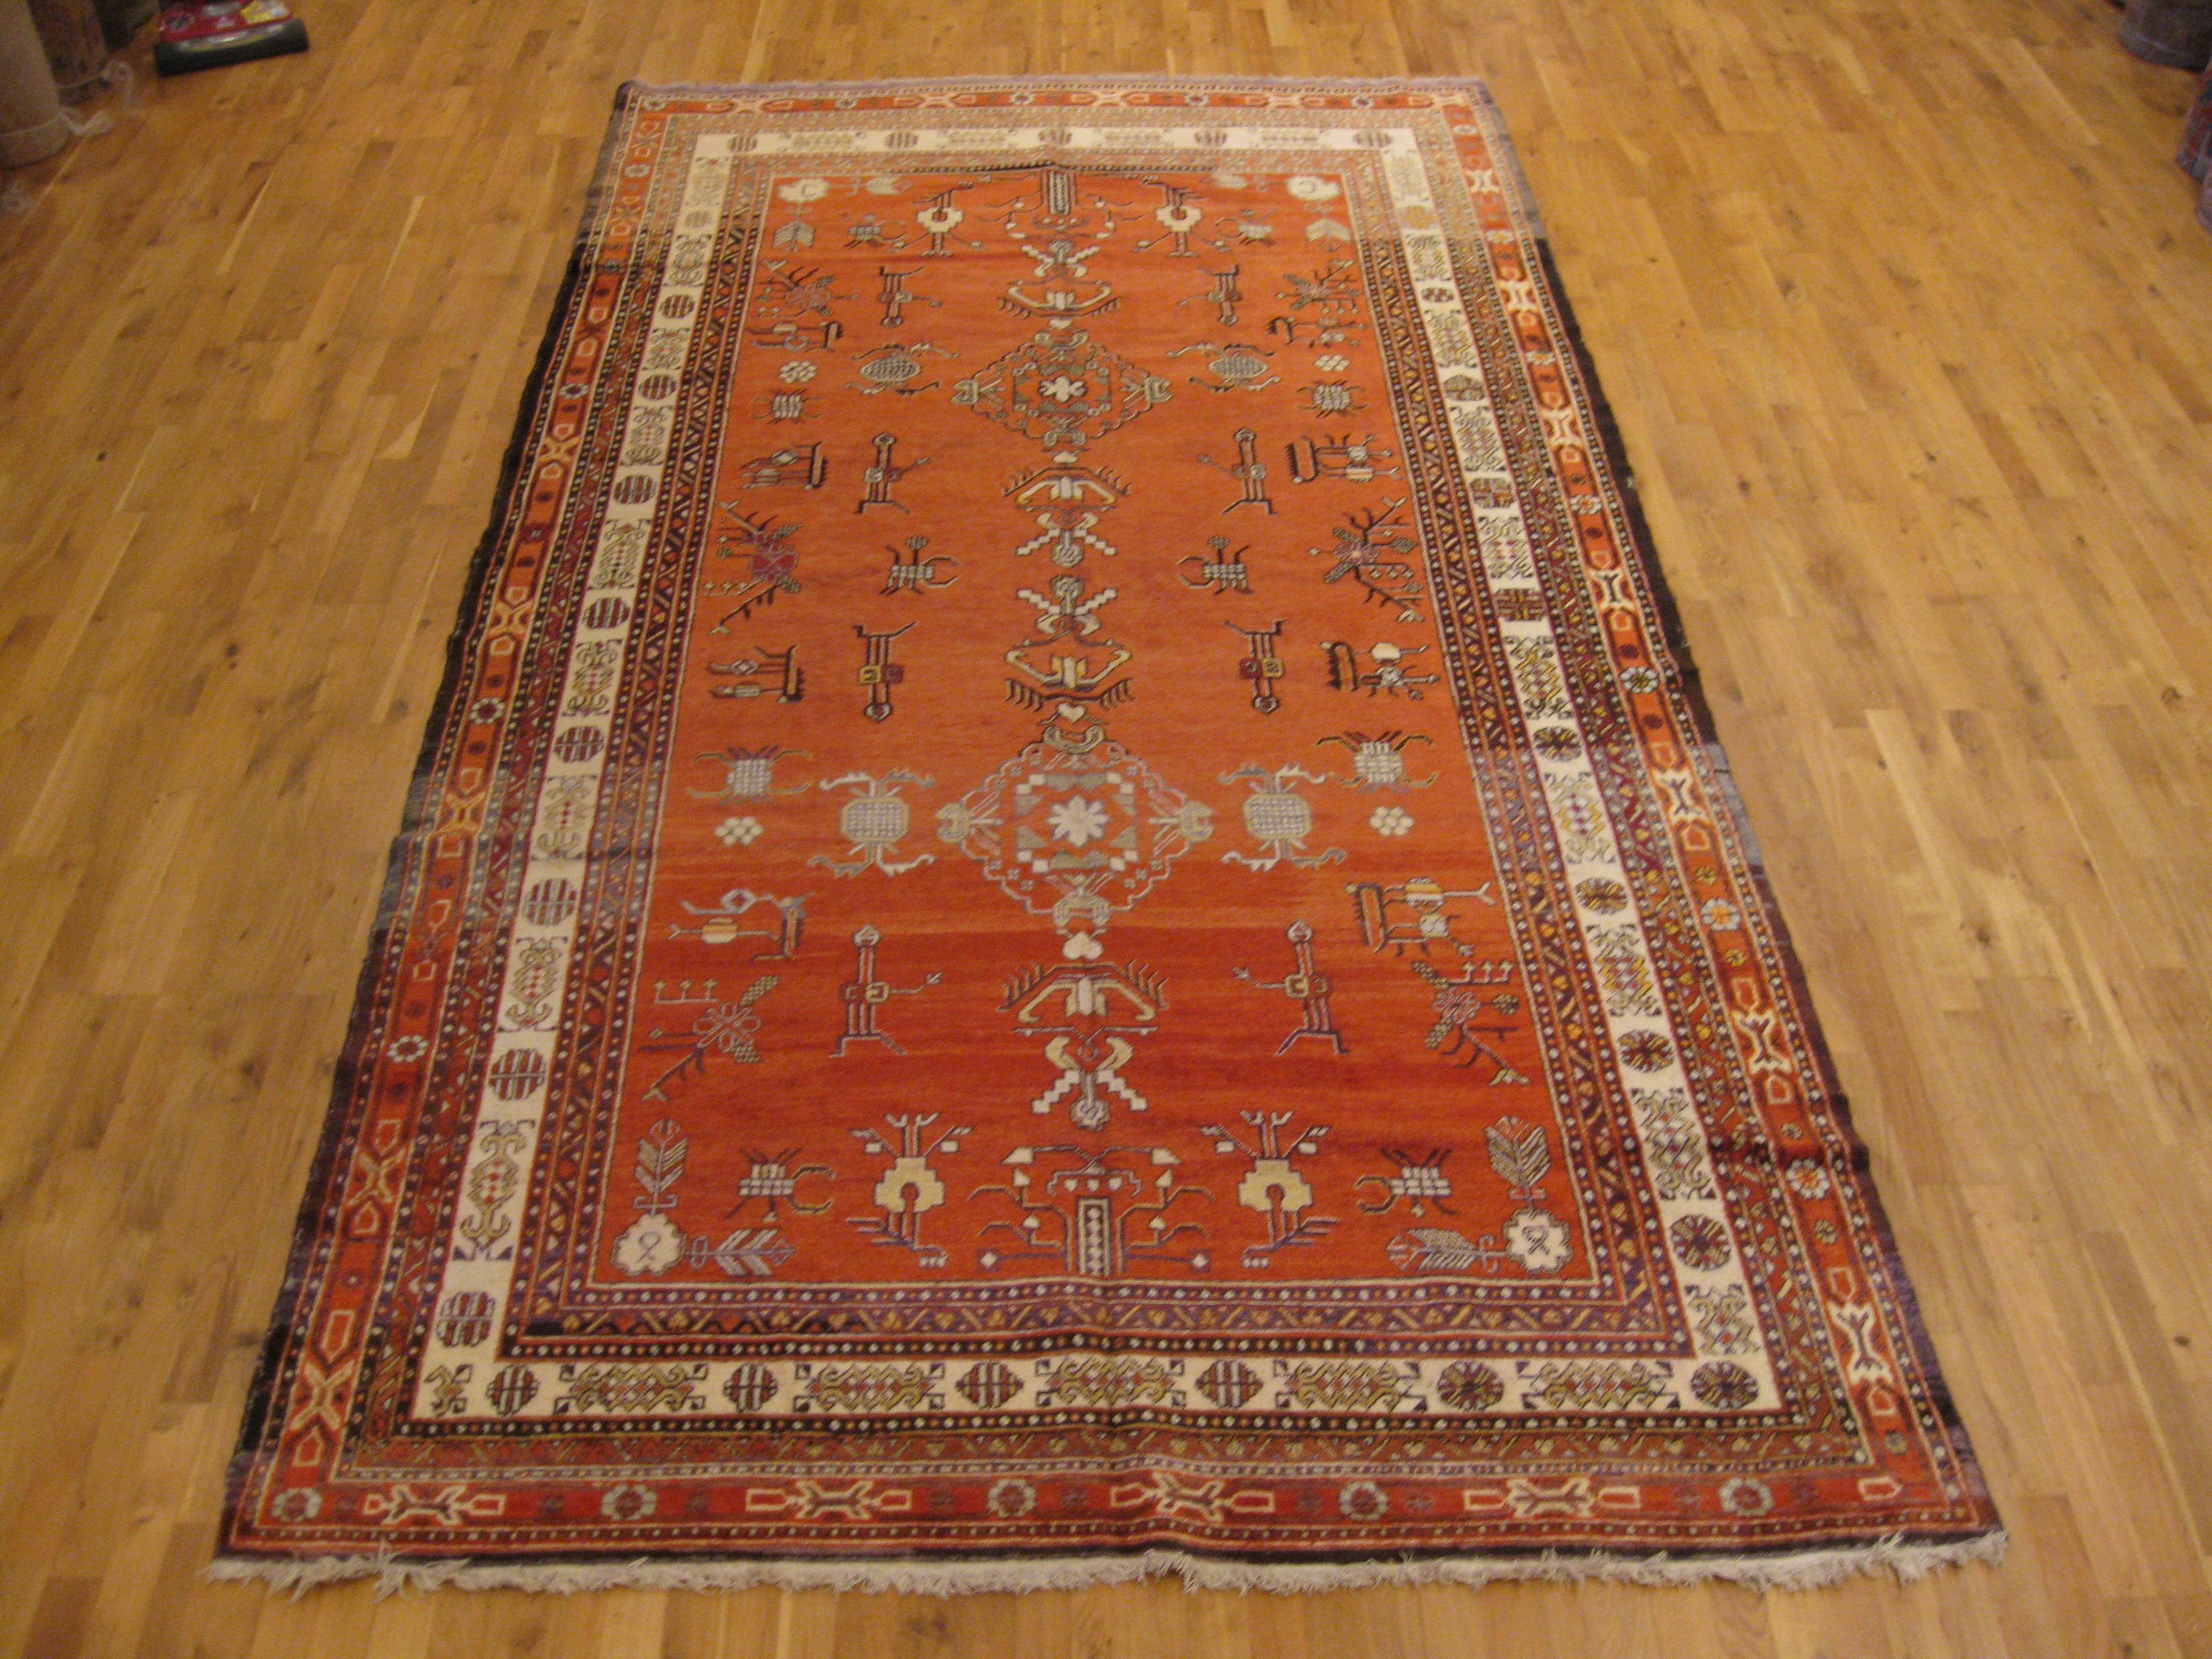 Angesichts der Tatsache, dass Khotan ursprünglich eine Oase an der Seidenstraße war, überrascht es nicht, dass die Teppiche aus Khotan (im Nordwesten Chinas) eine faszinierende Mischung aus chinesischen, zentralasiatischen und westlichen Farben und